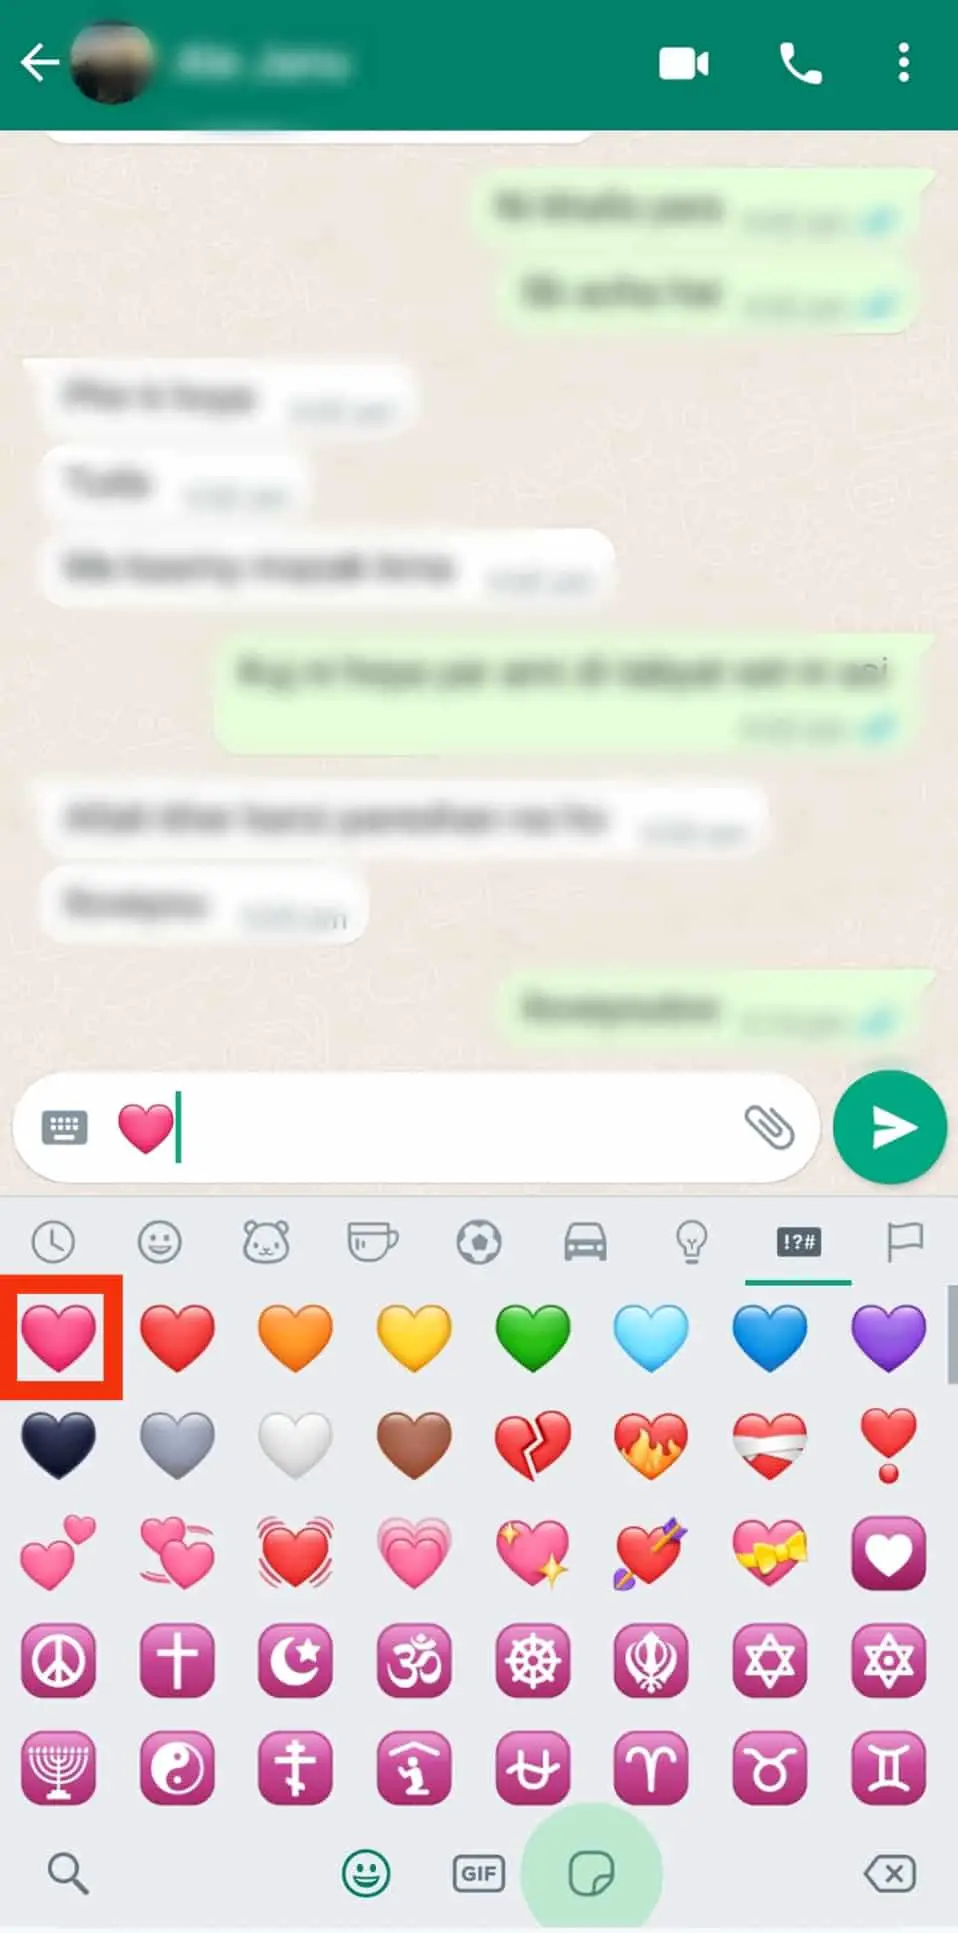 Cómo enviar corazón en WhatsApp?